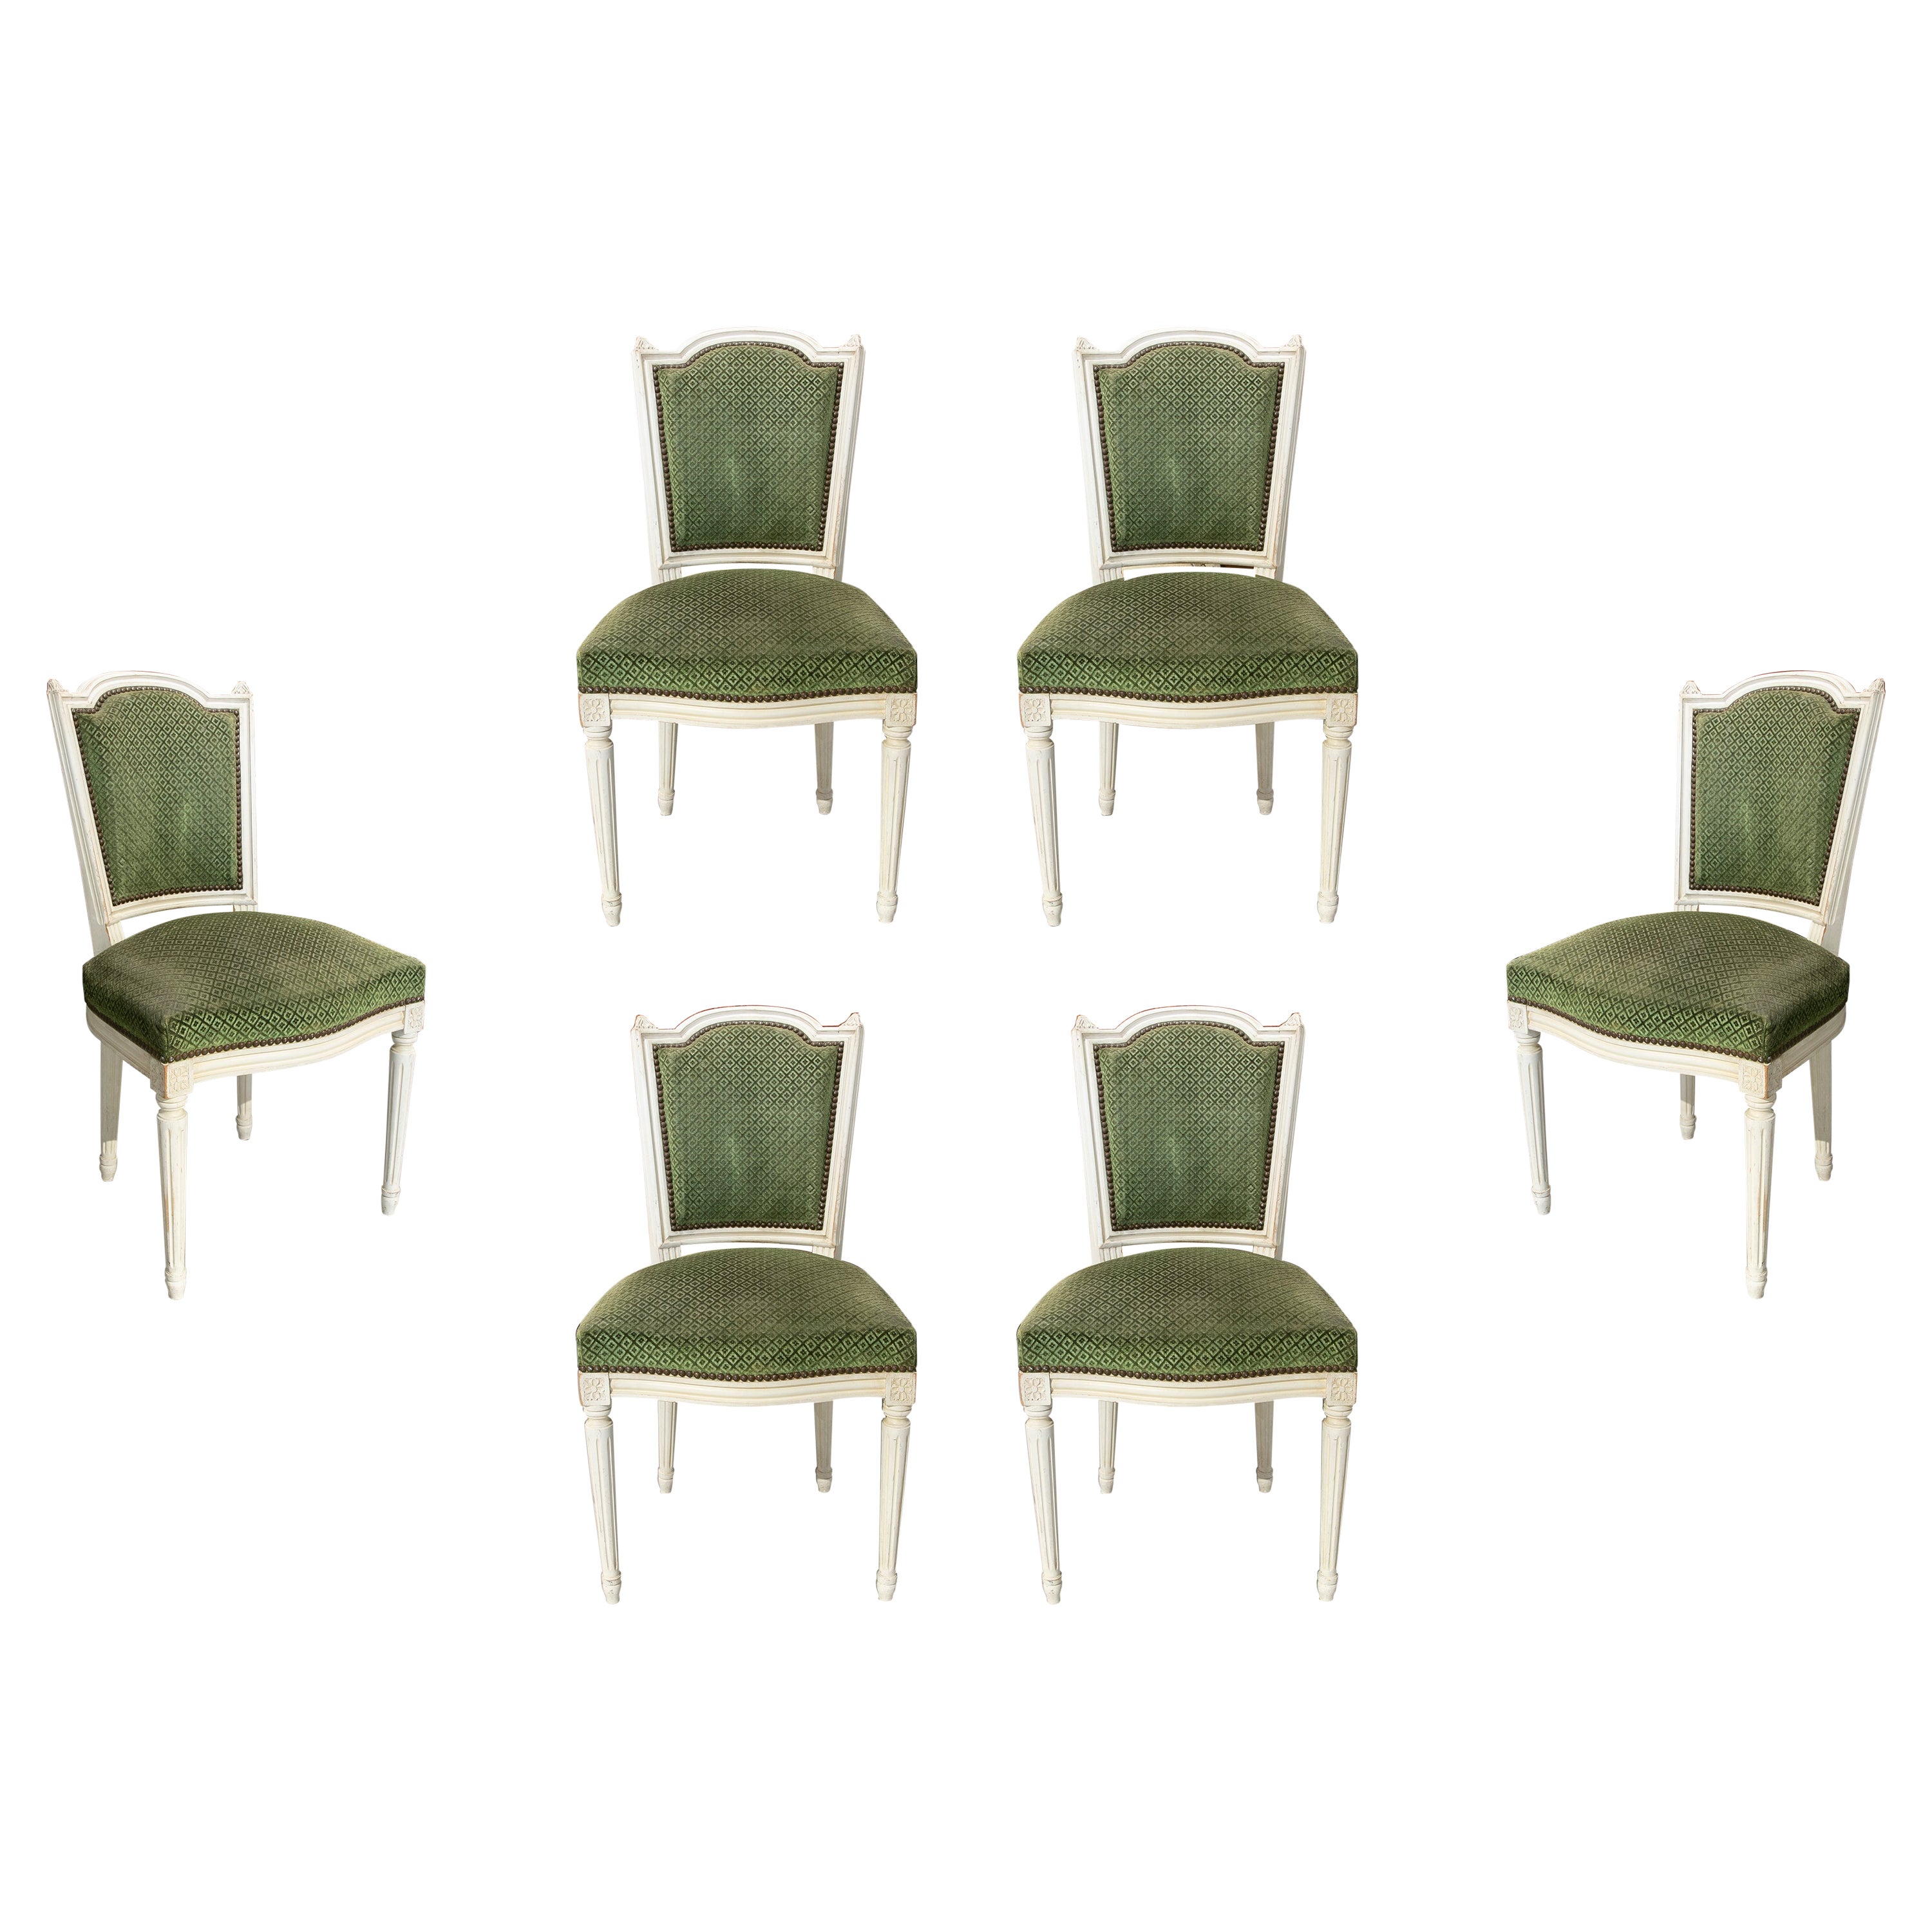 19. Jahrhundert, Französisch, Satz von sechs Holzstühlen, grün gepolstert